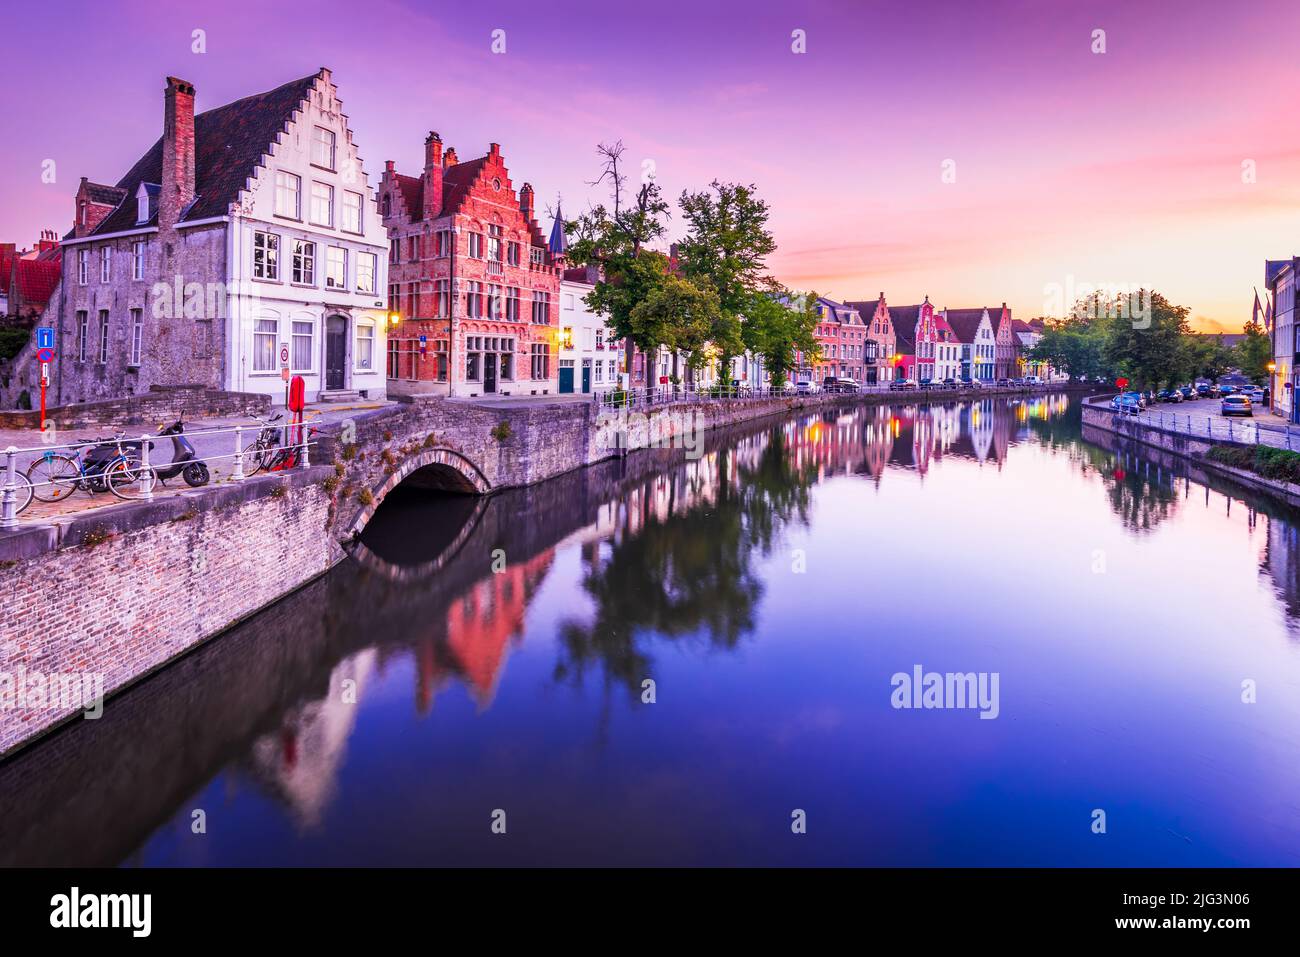 Brügge, Belgien. Blue Hour Sunrise Landschaft mit Wasserspiegelungen Häuser am Spiegelrei Kanal, berühmtes Wahrzeichen Flanders. Stockfoto